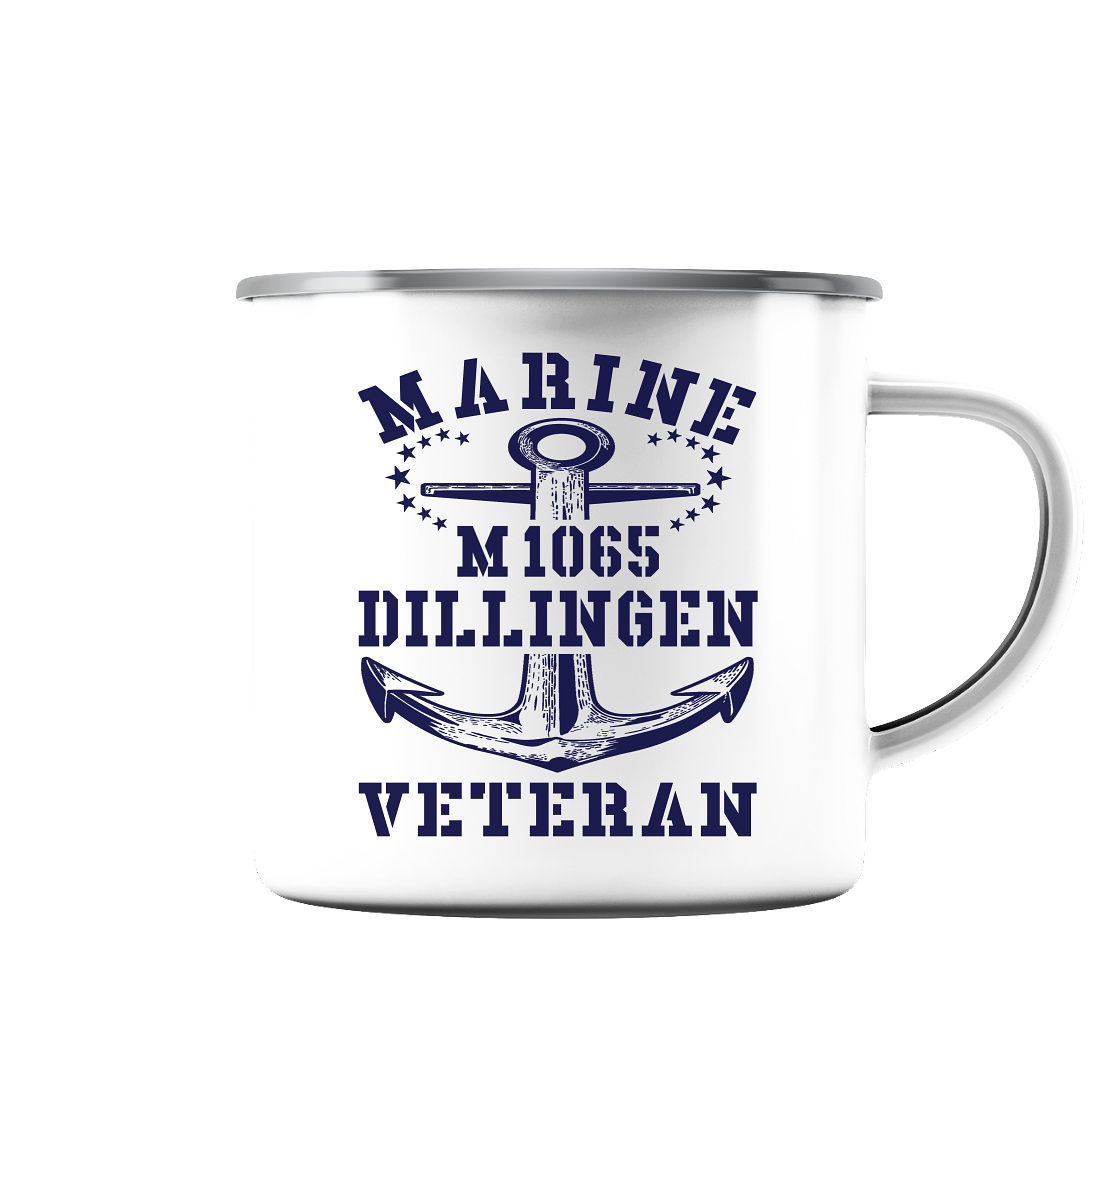 Mij.-Boot M1065 DILLINGEN Marine Veteran  - Emaille Tasse (Silber)